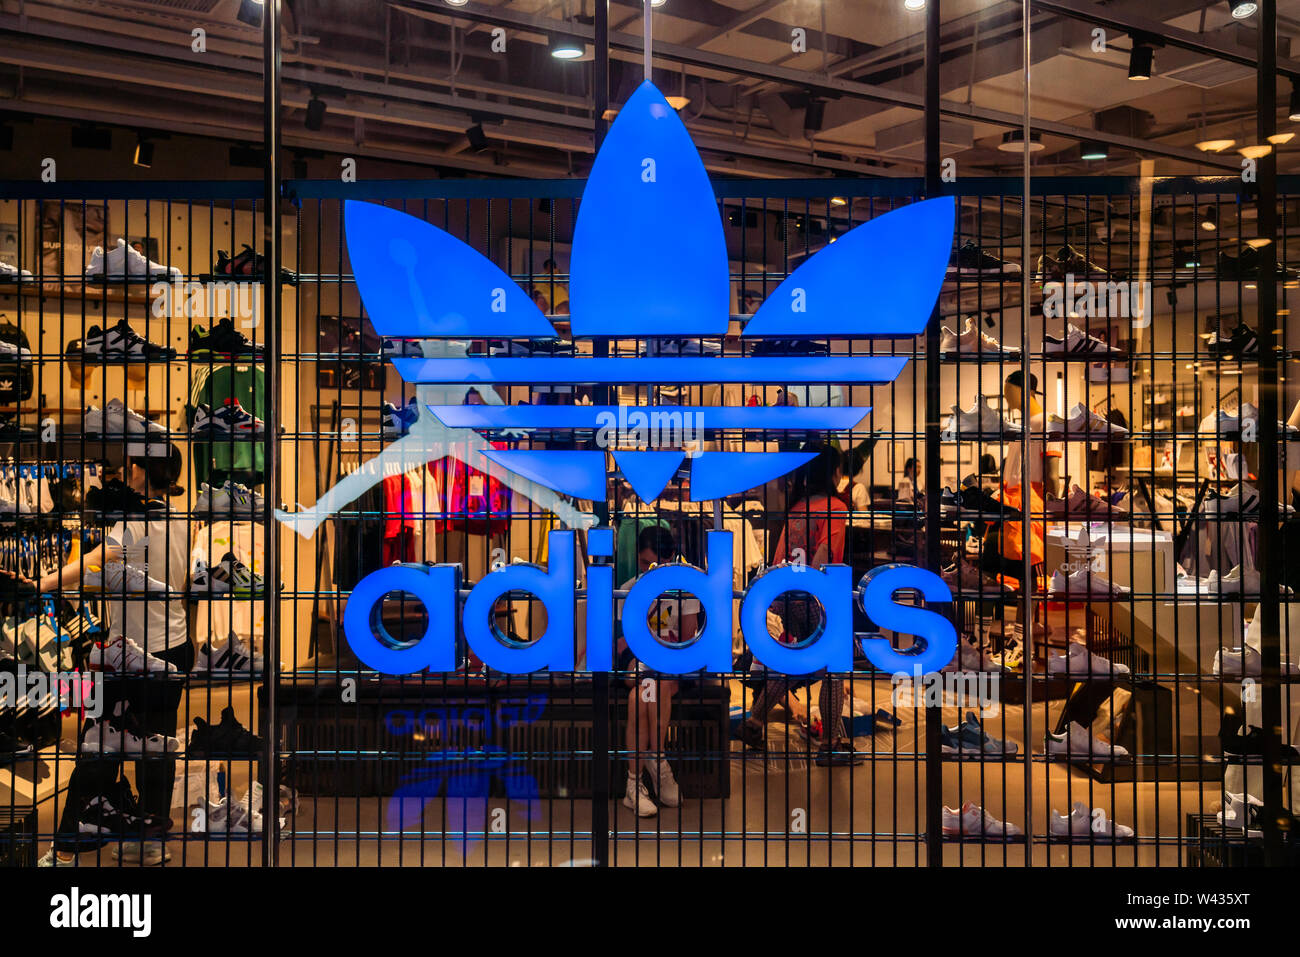 Adidas Originals, una línea de ropa deportiva casual bajo la multinacional alemana la marca de ropa deportiva Adidas, tienda y logo visto en Shangai Fotografía de stock -